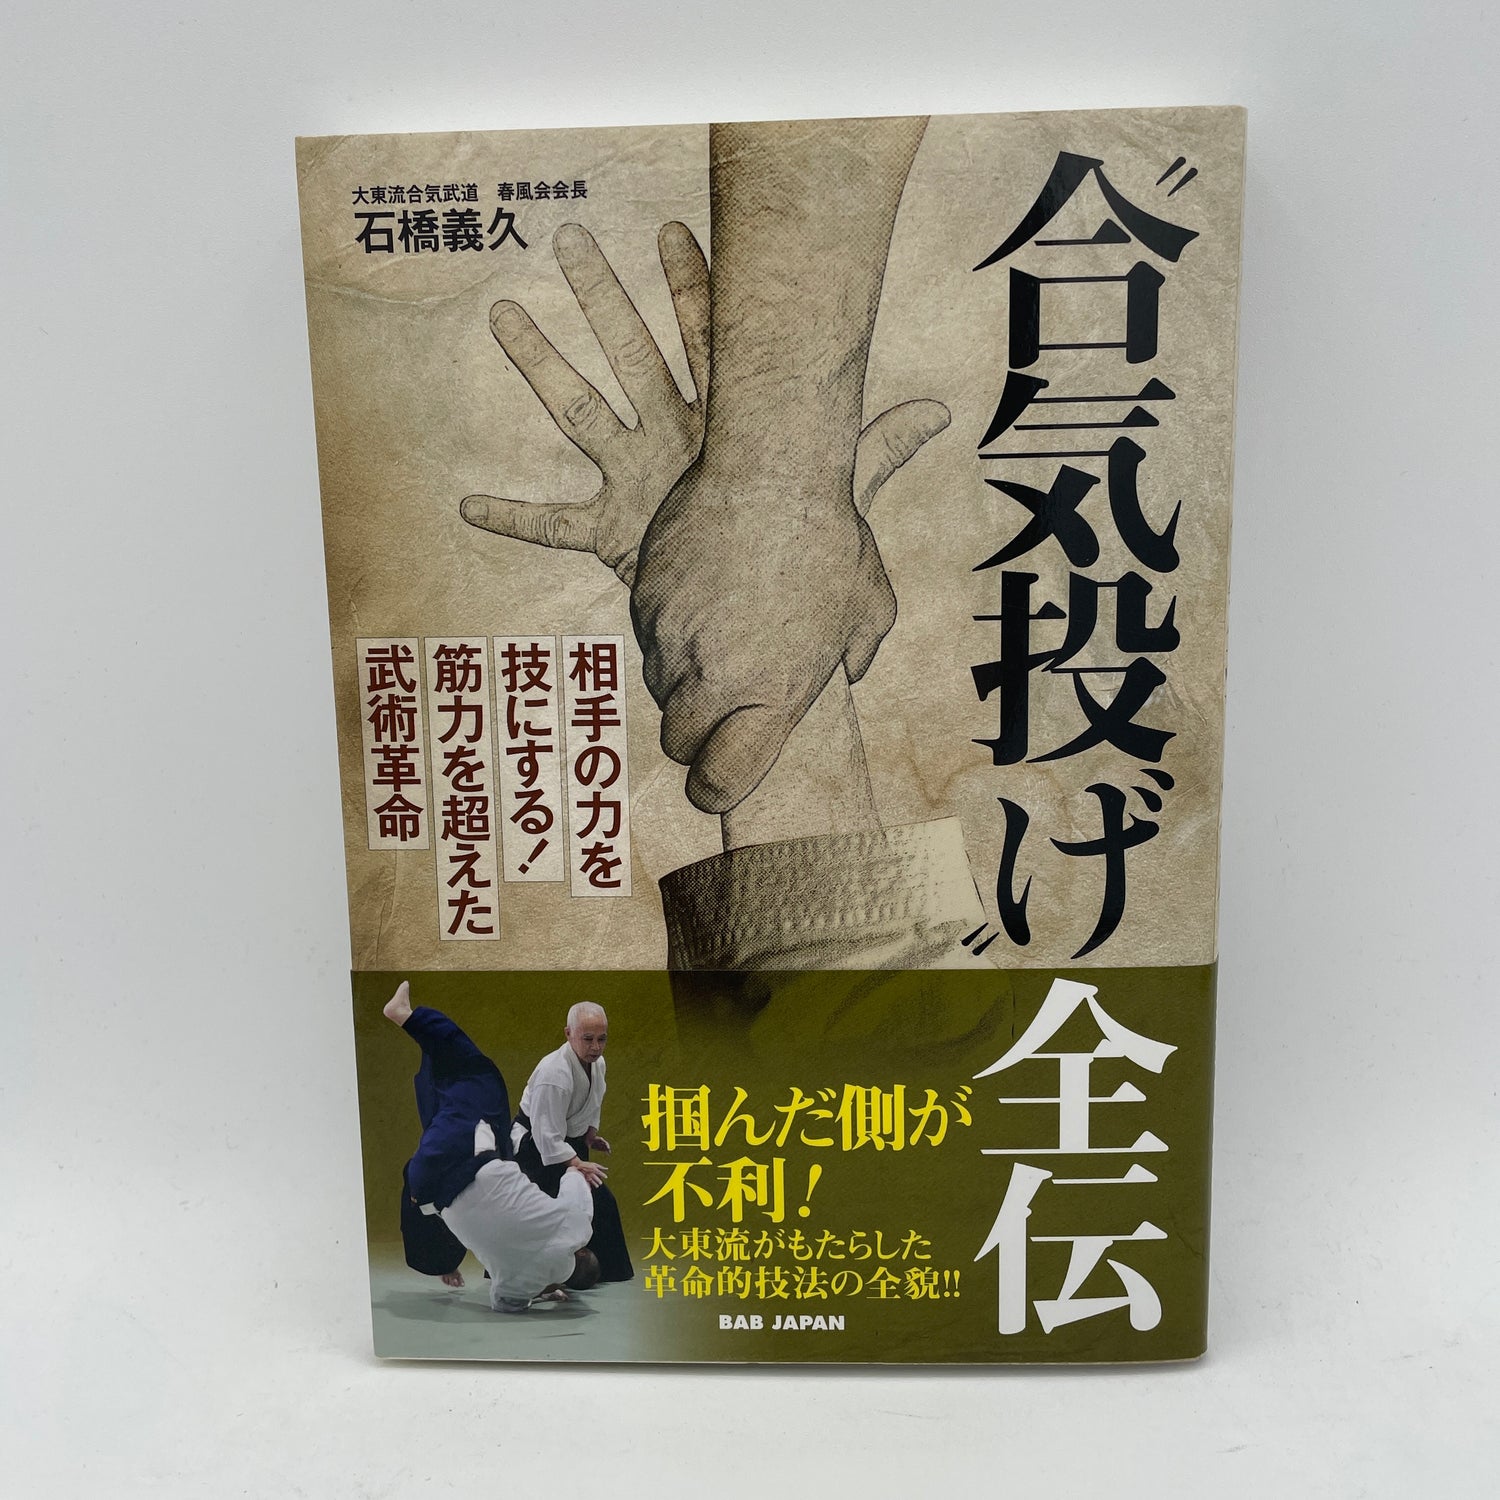 Compendio completo del libro de lanzamientos de Aiki de Yoshihisa Ishibashi